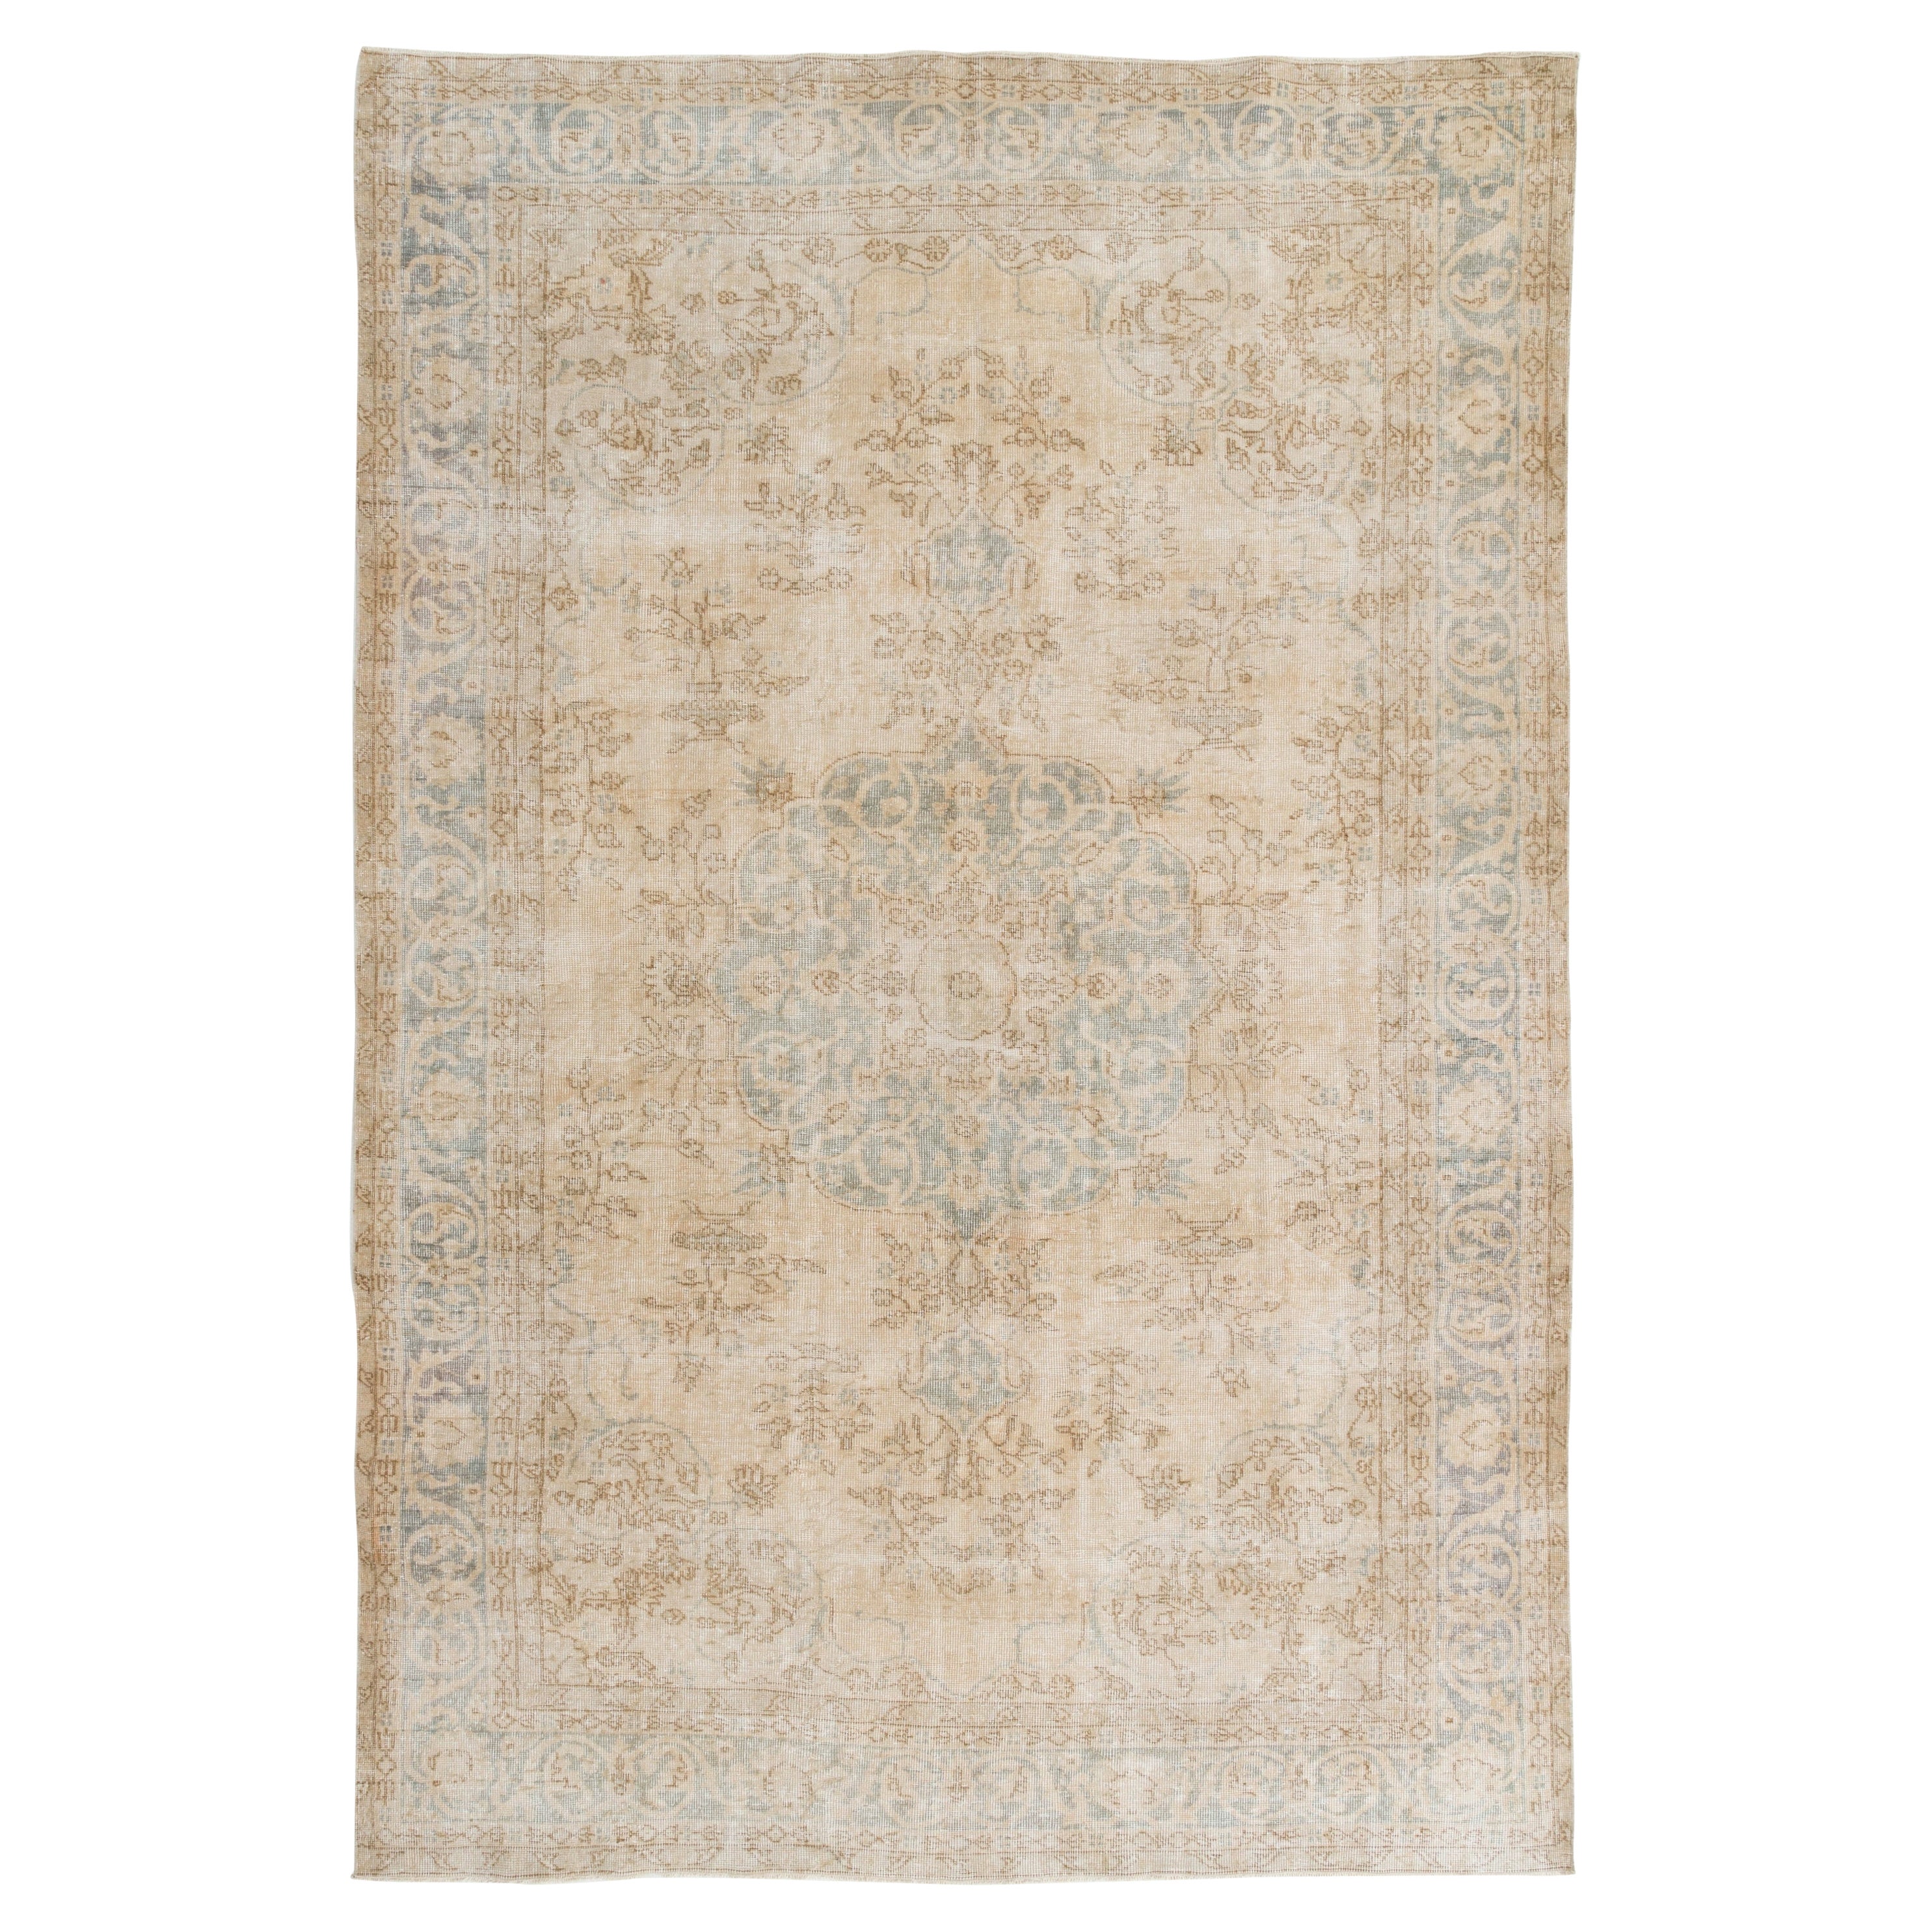 7.2x10.8 ft Vintage Medallion Design Rug. Neutral Colors, Handmade Large Carpet For Sale